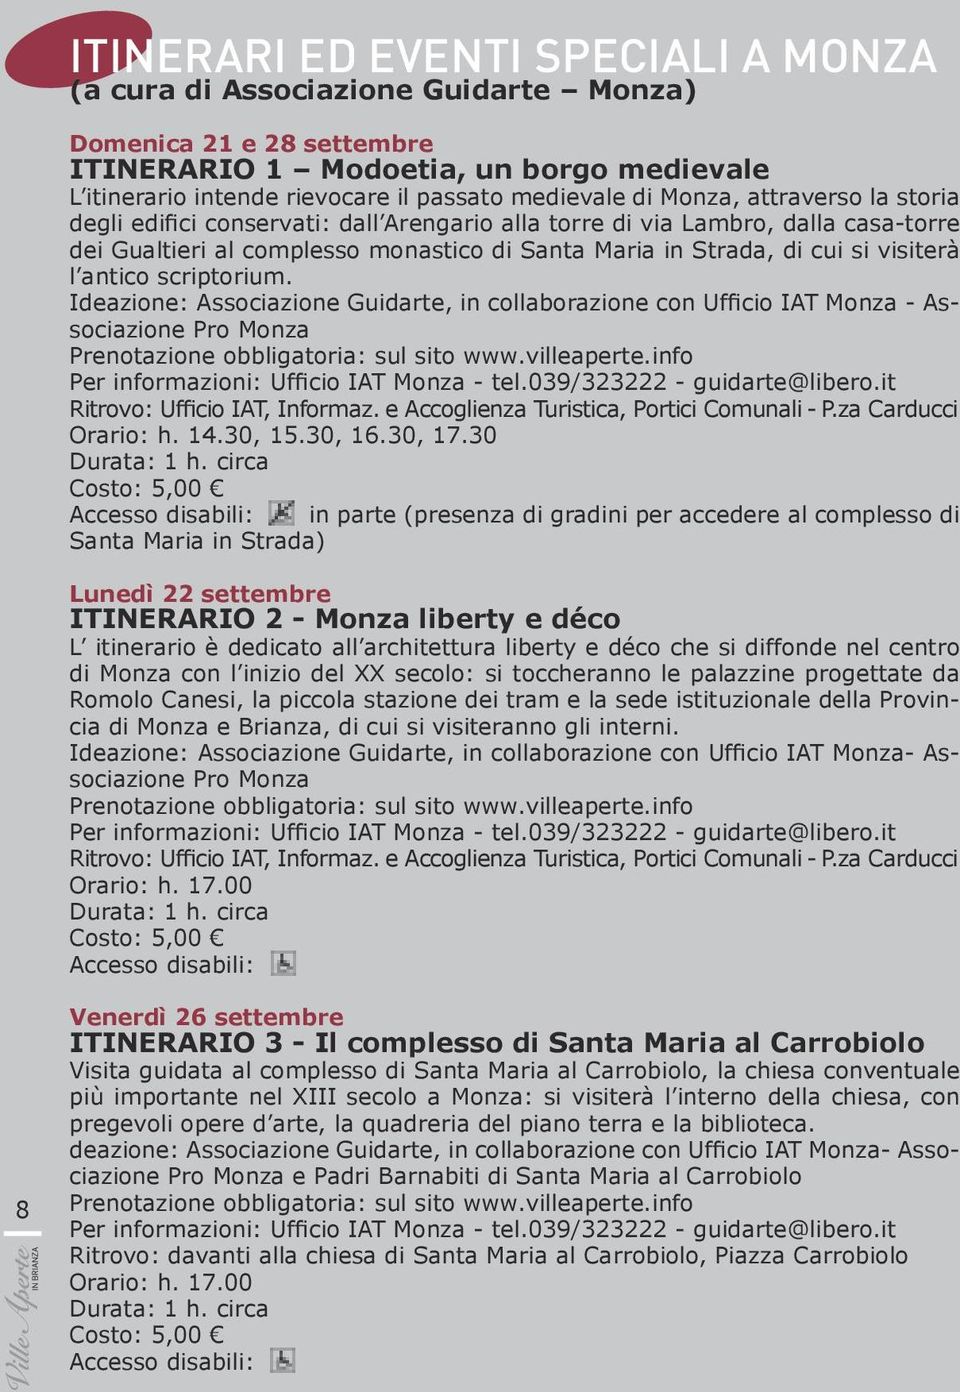 antico scriptorium. Ideazione: Associazione Guidarte, in collaborazione con Ufficio IAT Monza - Associazione Pro Monza Prenotazione obbligatoria: sul sito www.villeaperte.